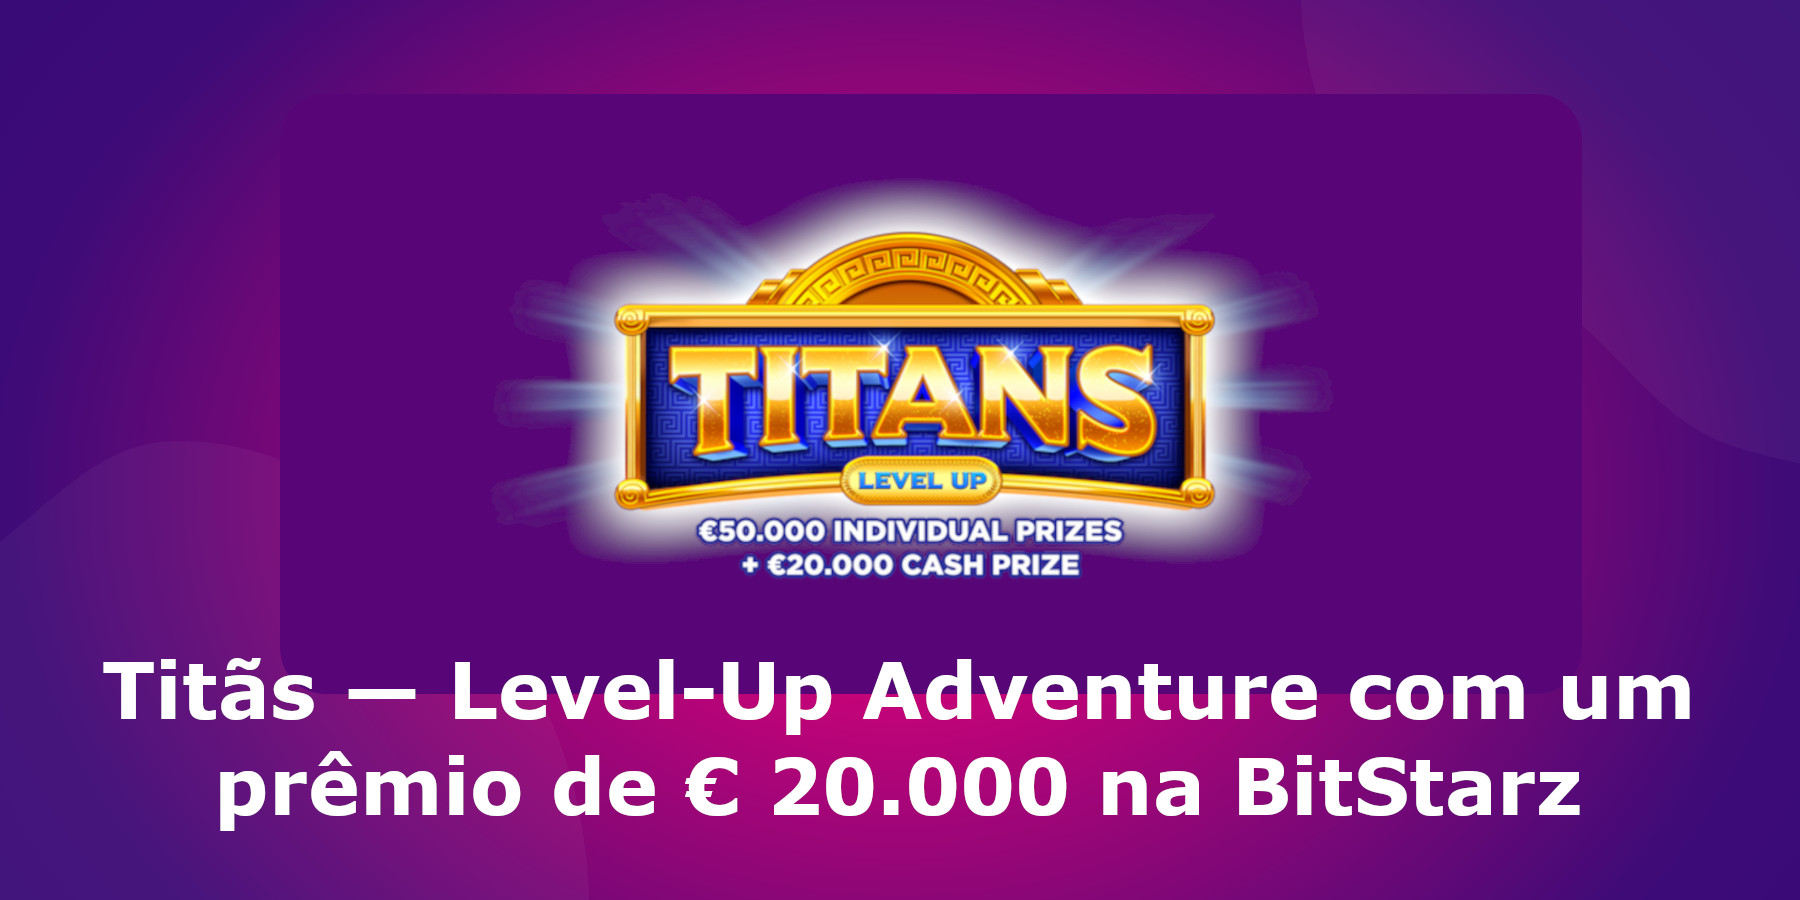 Titãs — Level-Up Adventure com um prêmio de € 20.000 na BitStarz